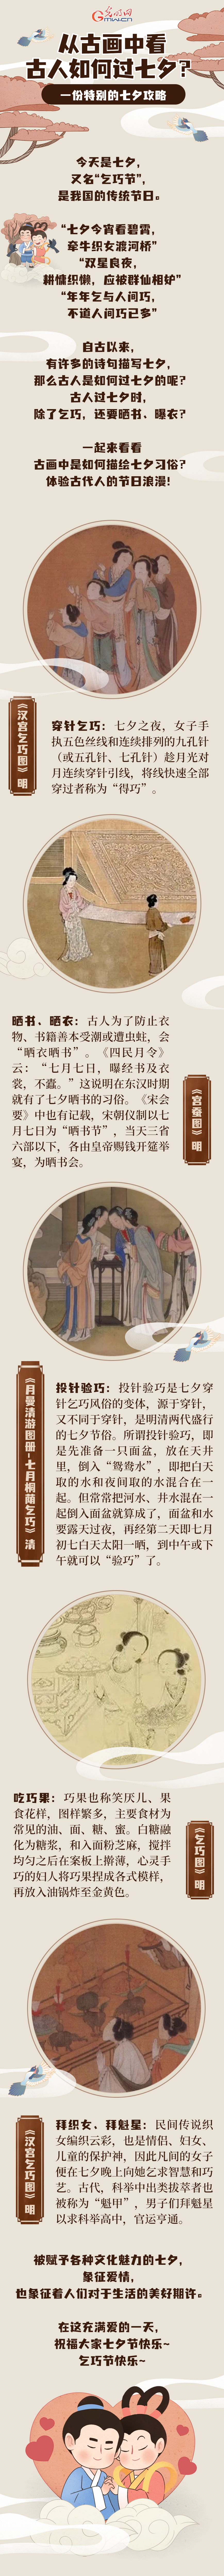 【网络中国节·七夕】一份特别的七夕攻略 | 从古画中看古人如何过七夕？